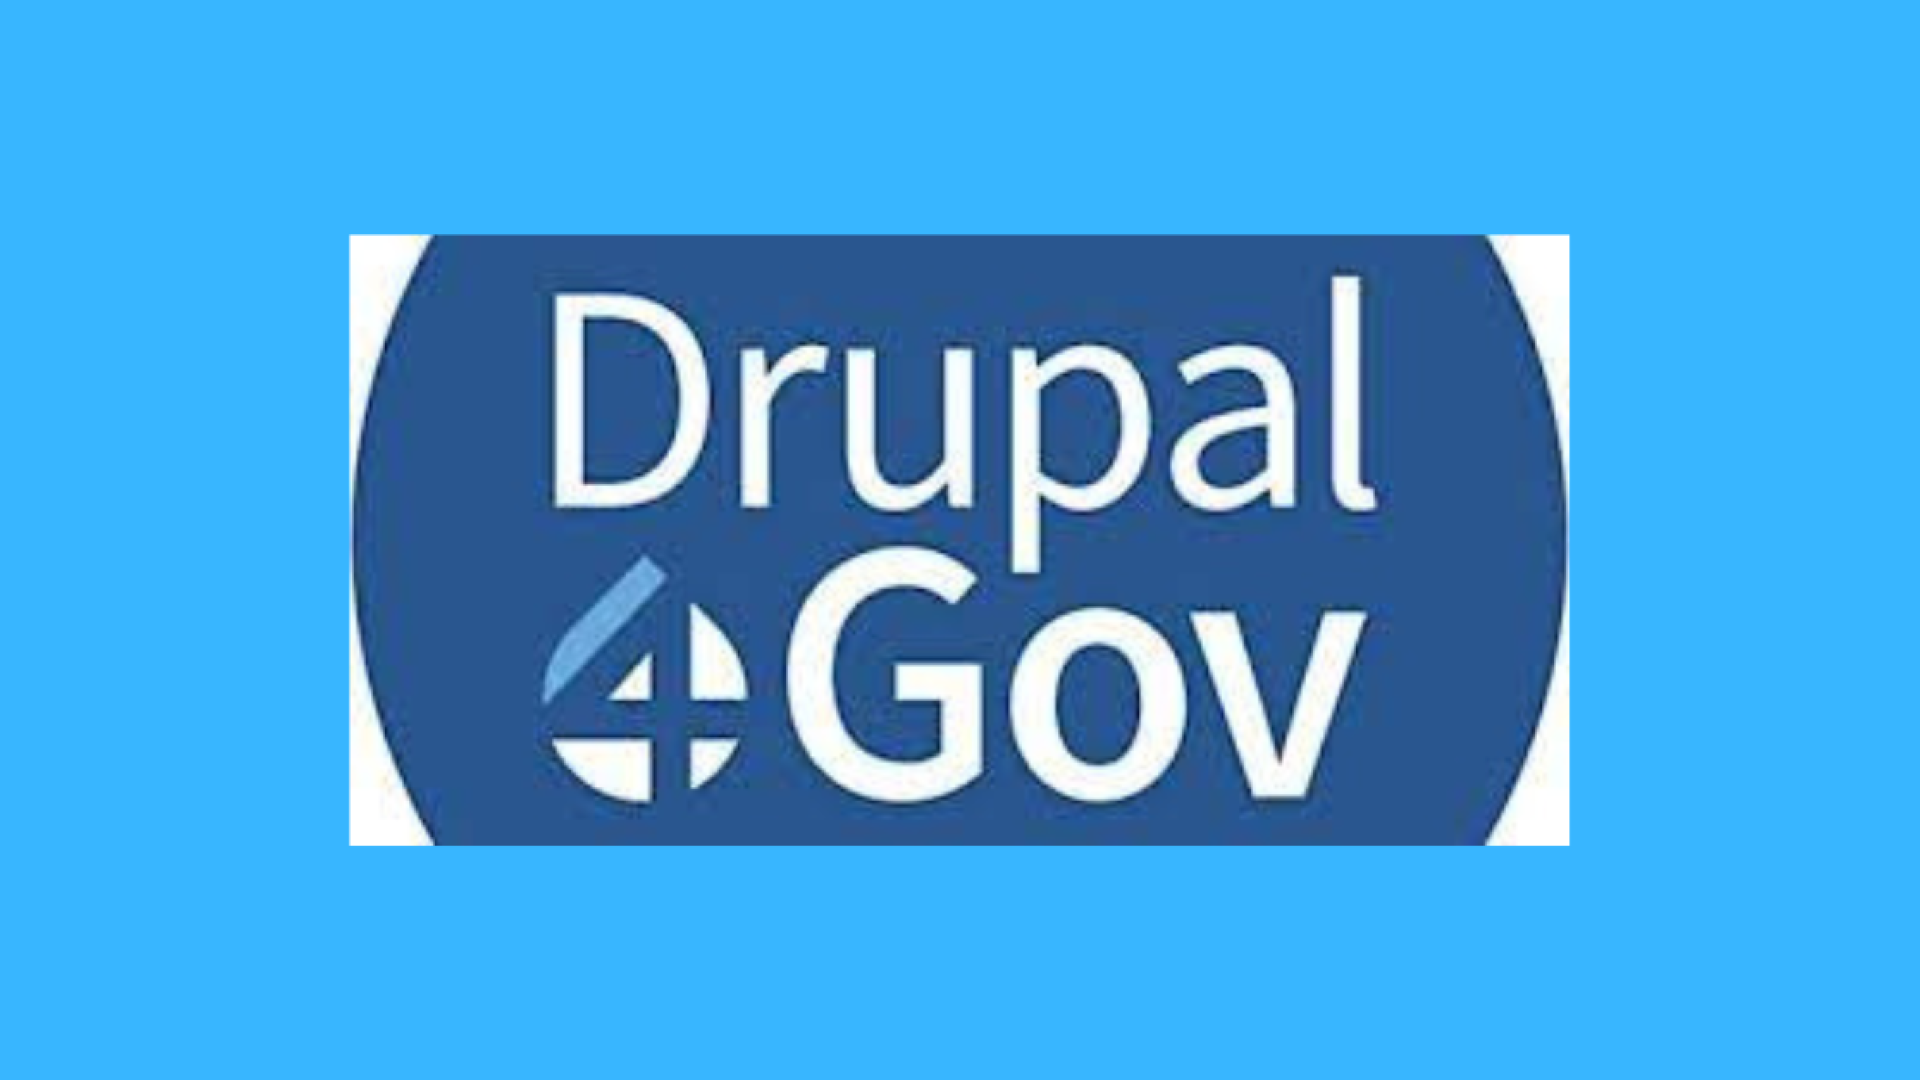 Drupal4gov